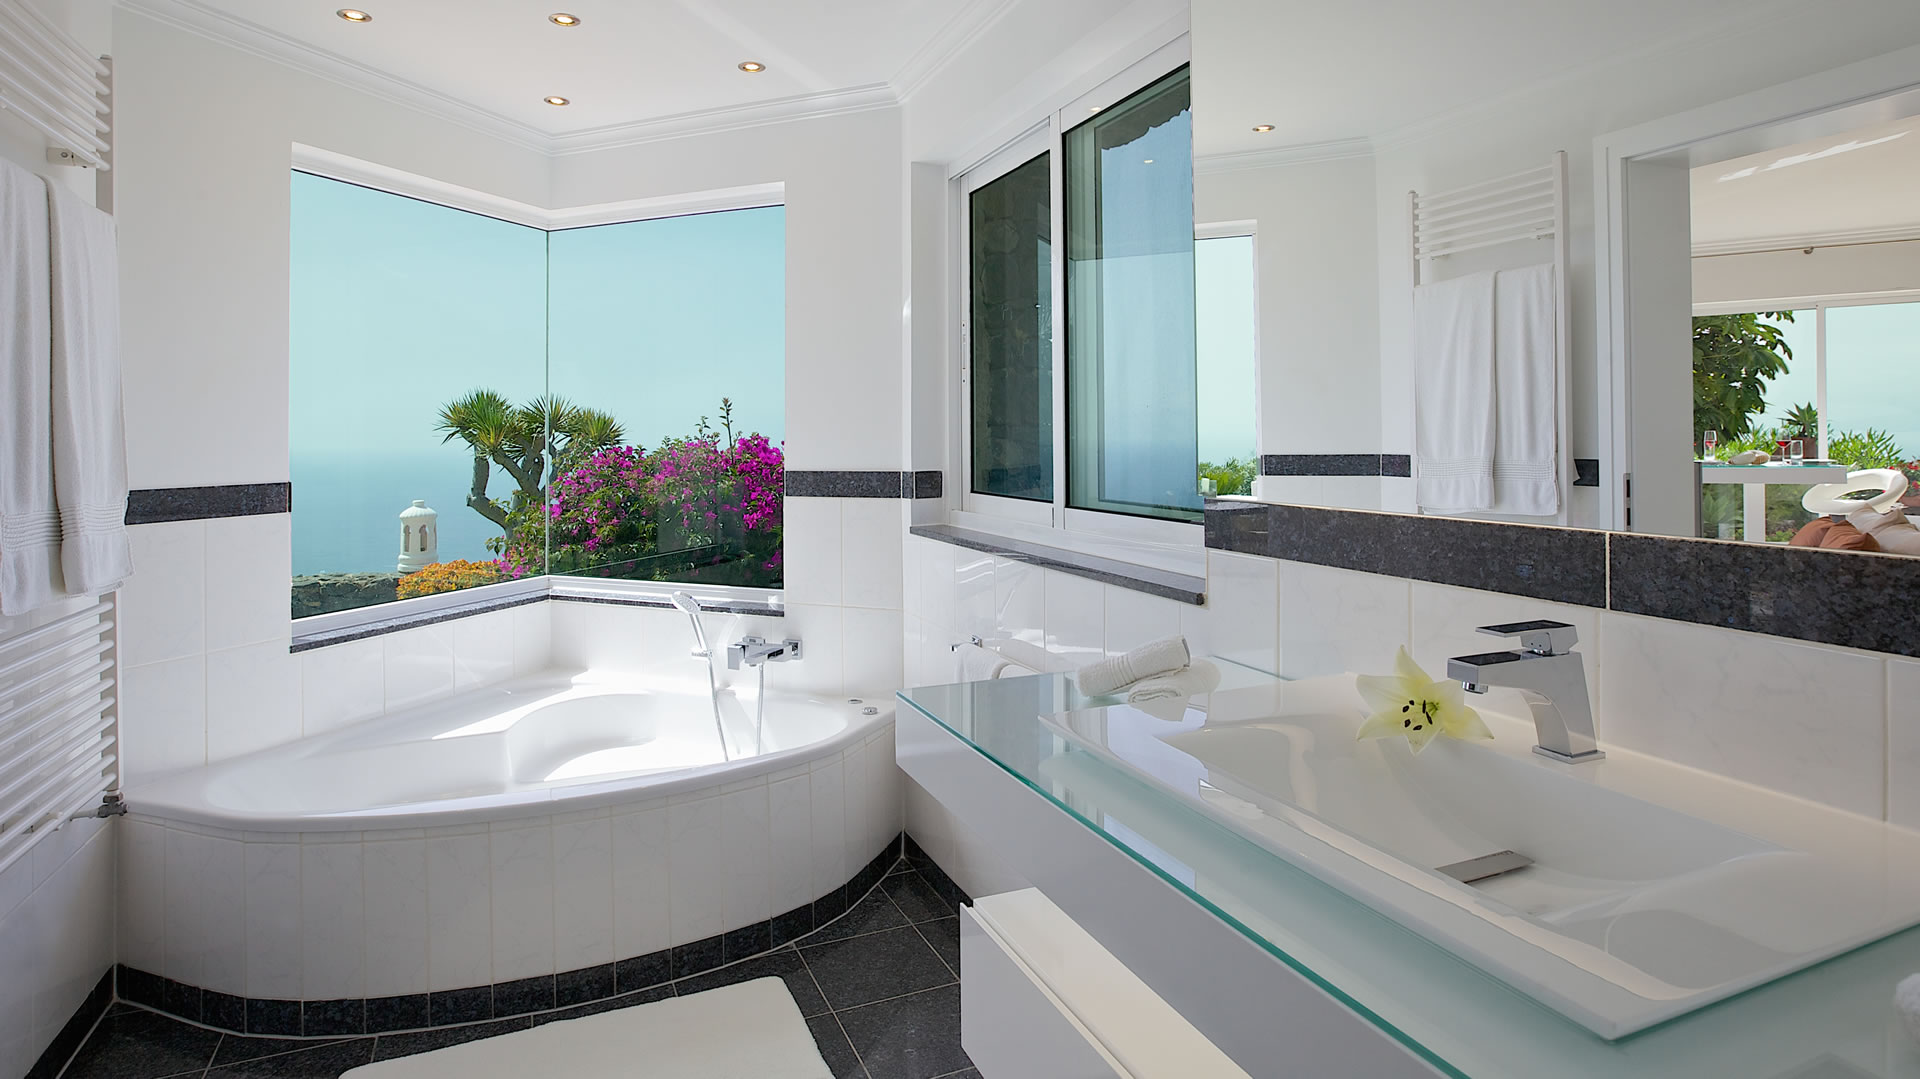 Casa Bruno at Jardin de la Paz: luxury bathroom with bathtub and view